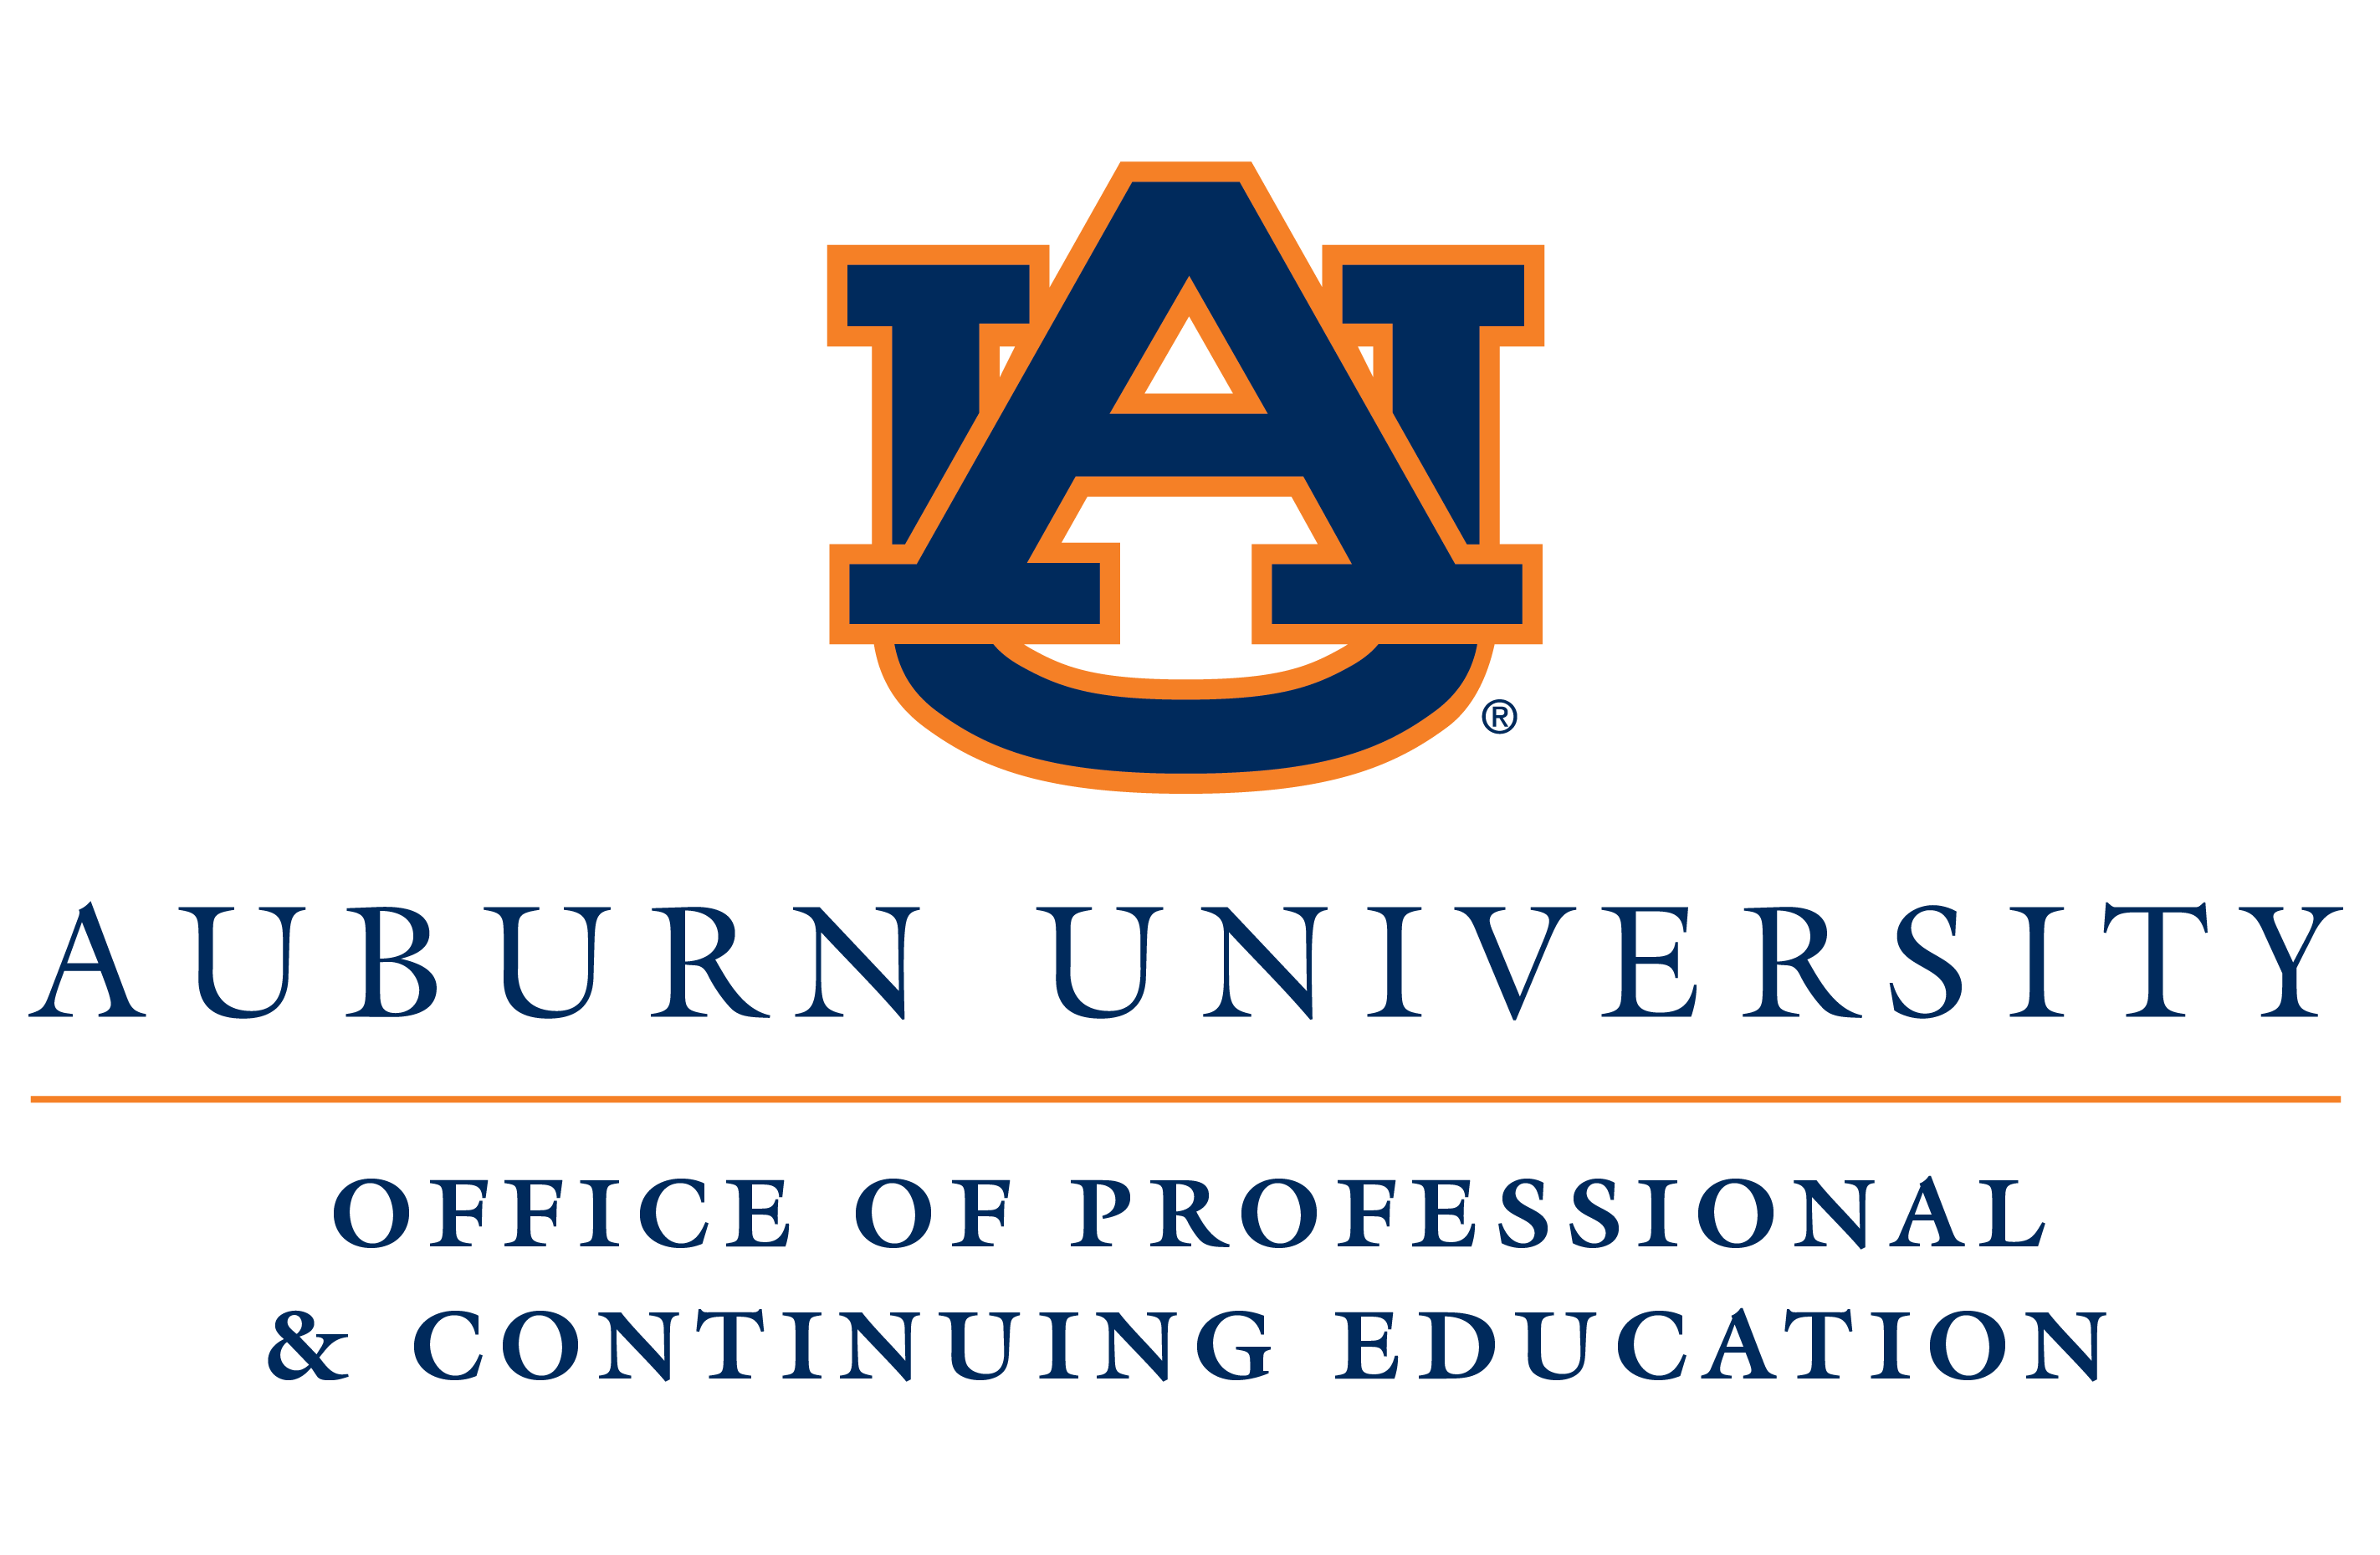 Auburn University Outreach